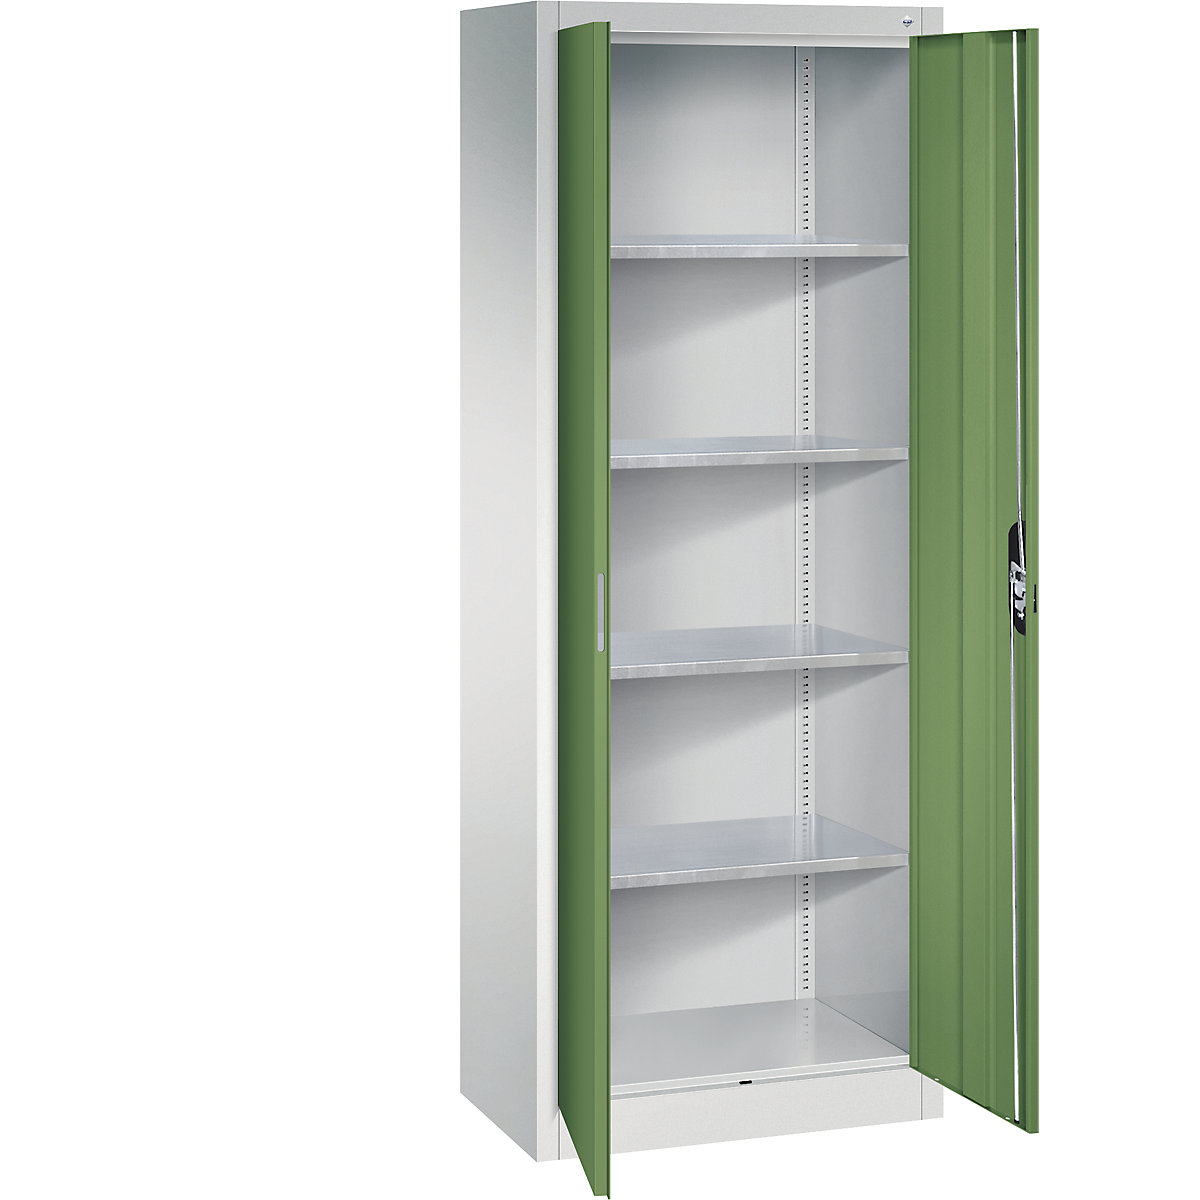 Workshop double door cupboard – C+P, HxWxD 1950 x 700 x 400 mm, light grey / reseda green-9